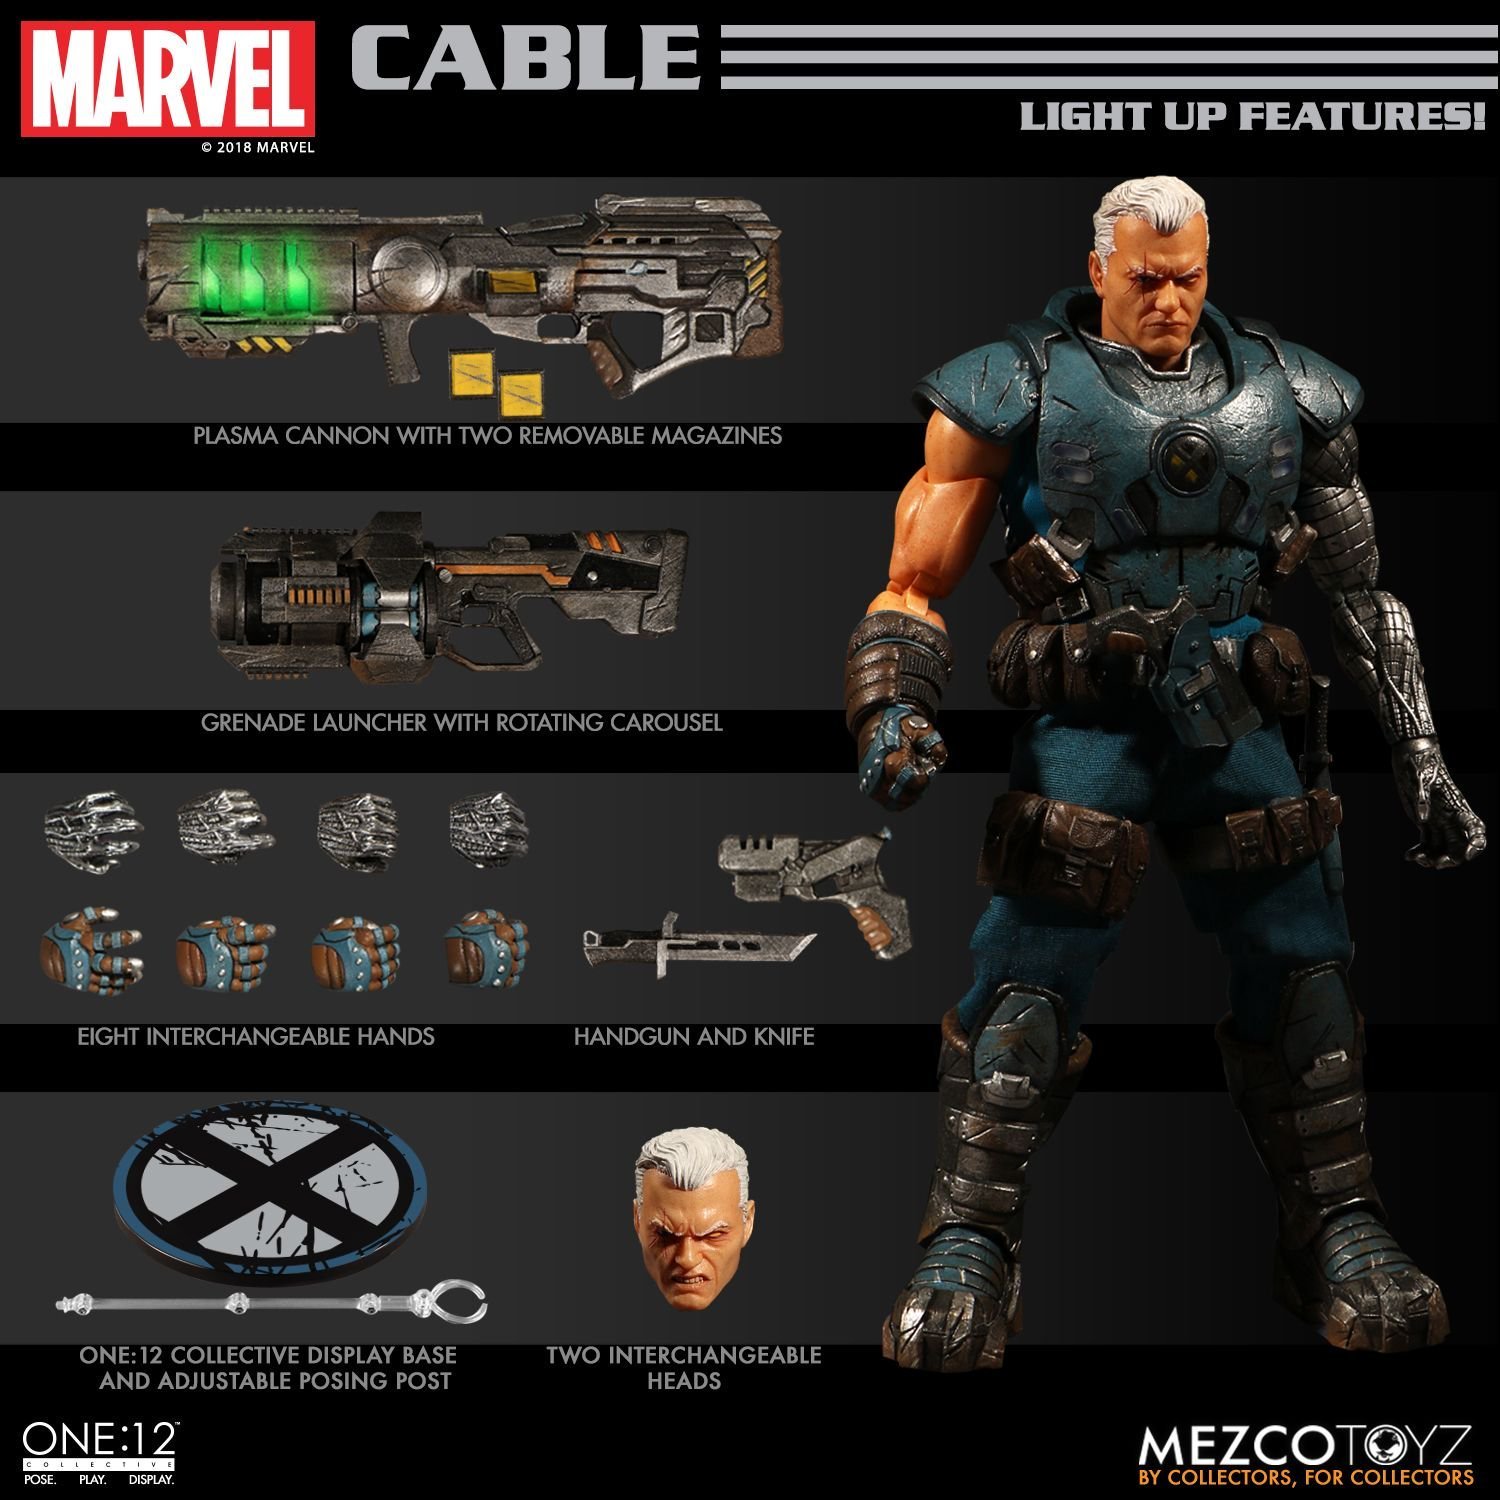 Mezco X-Men Cable One:12 Collective Action Figure